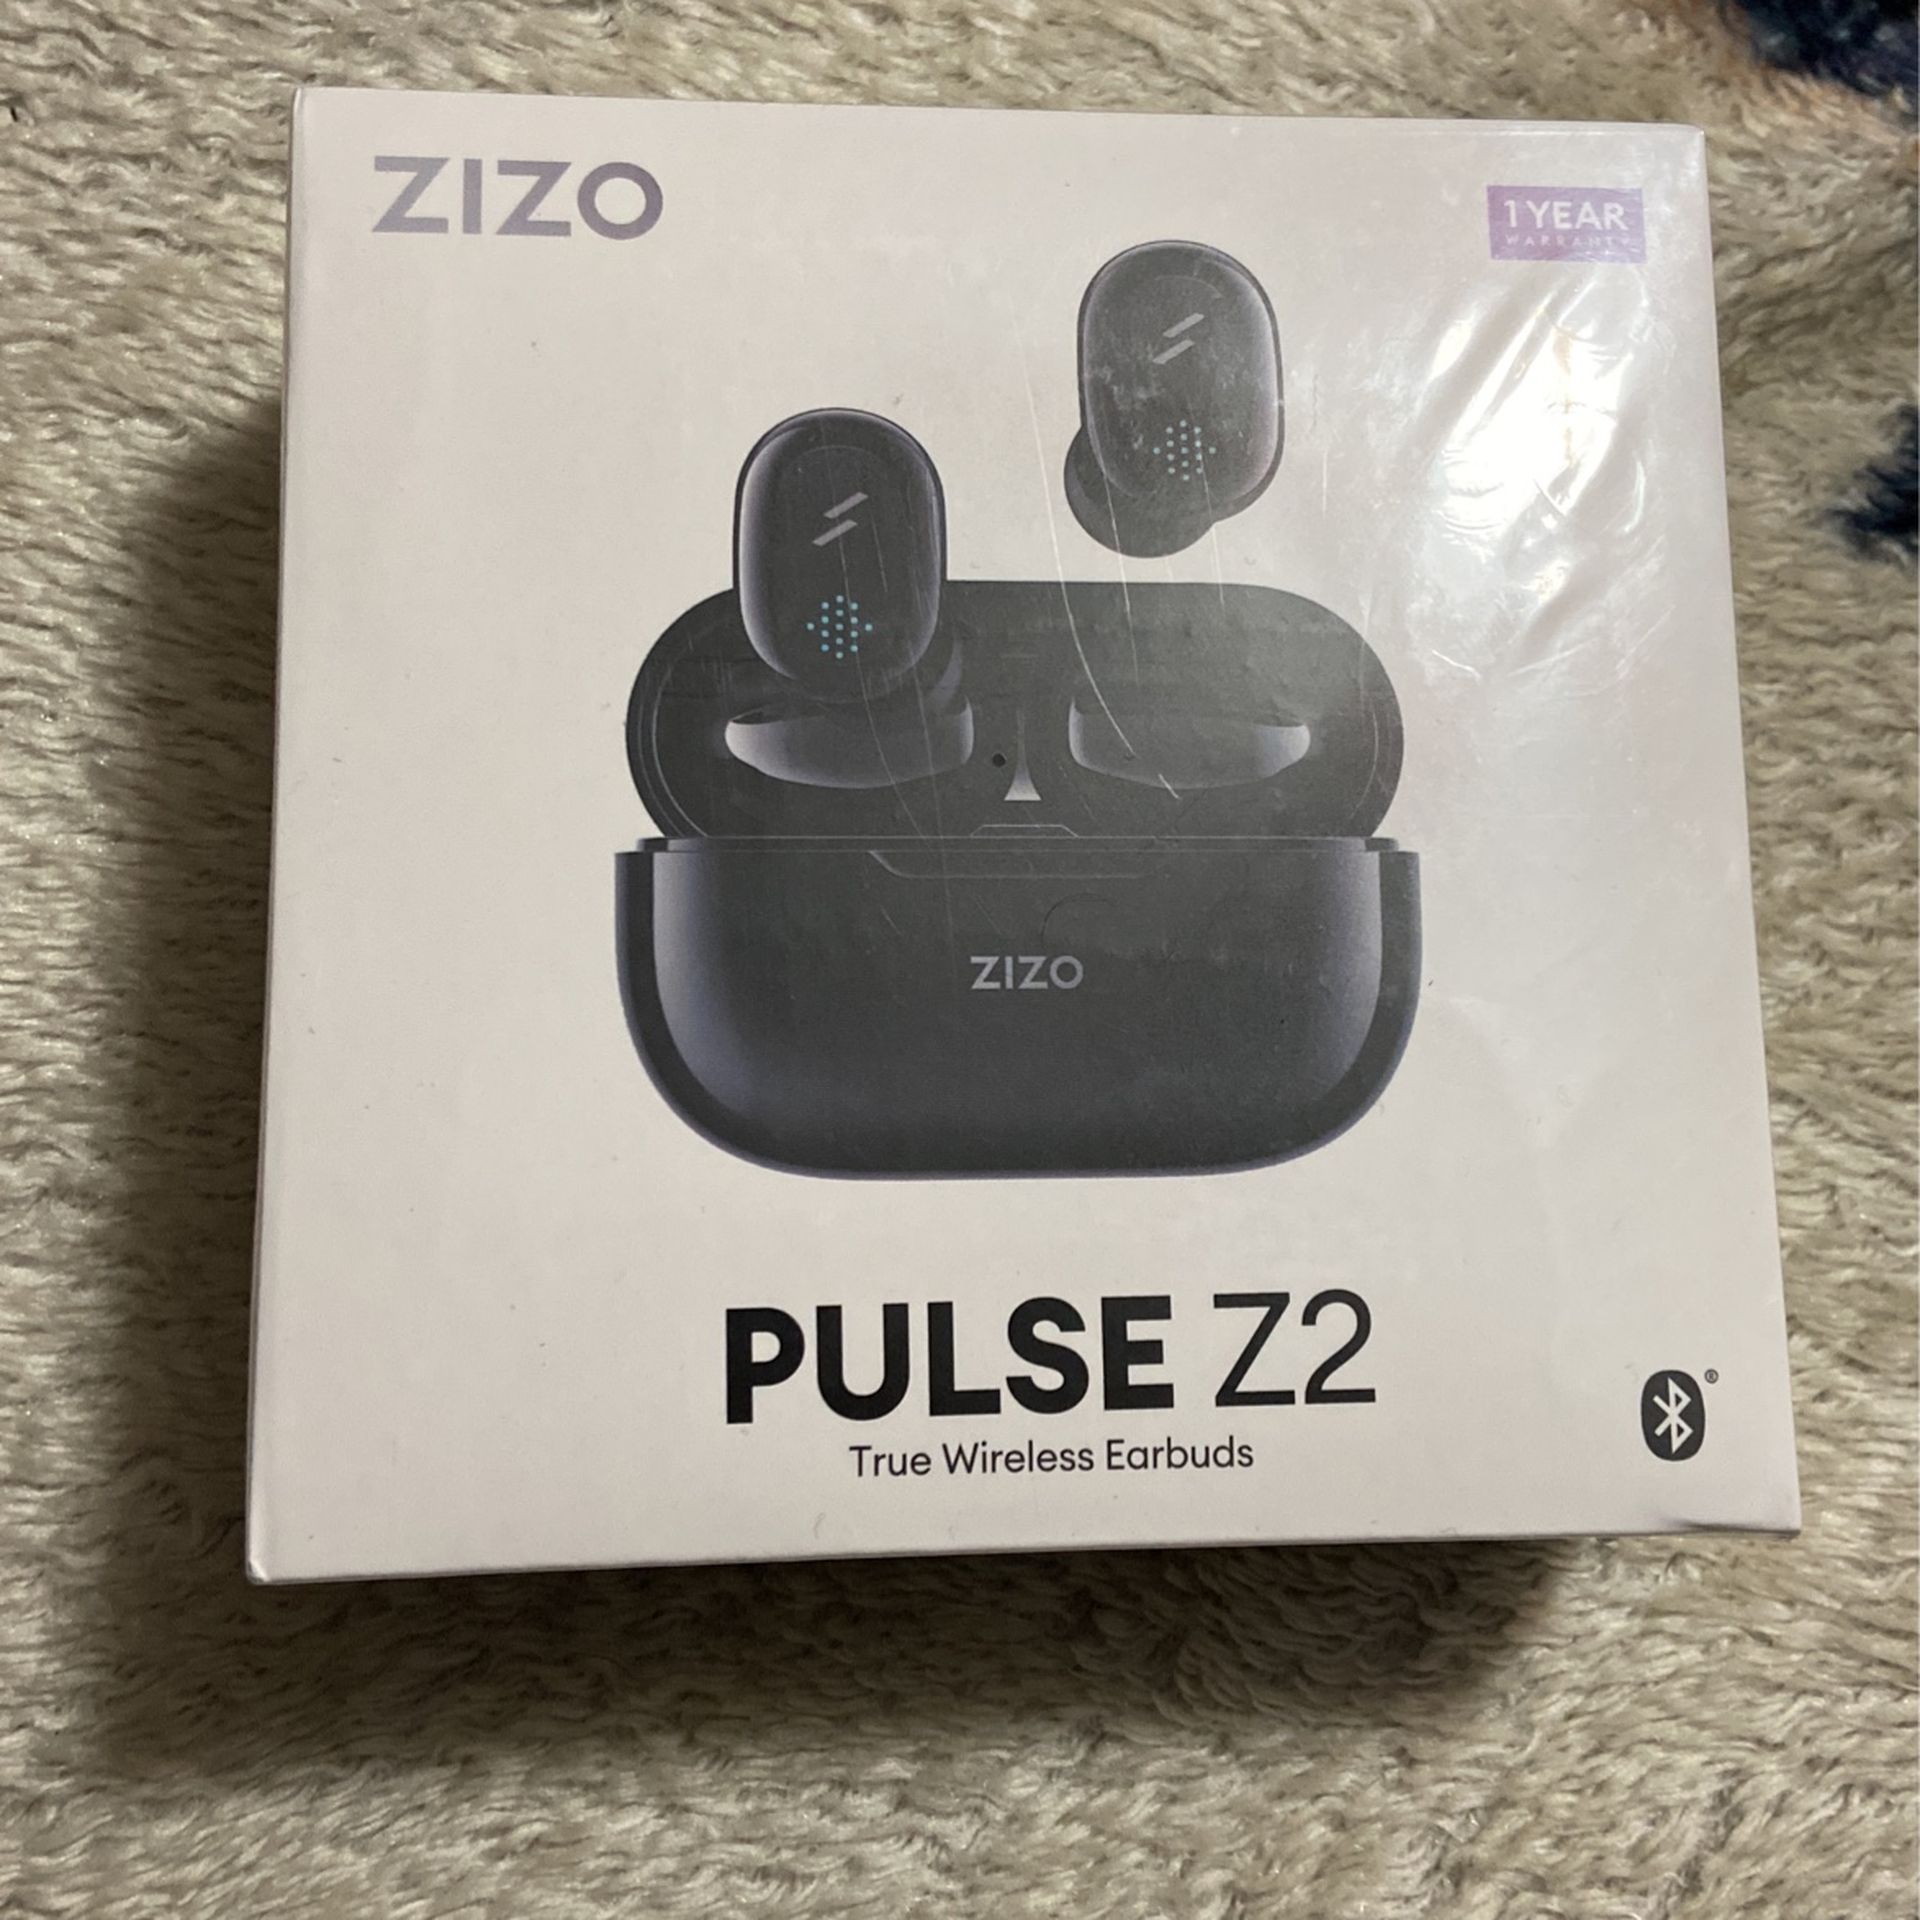 Zizo pulse z2 wireless earbuds 